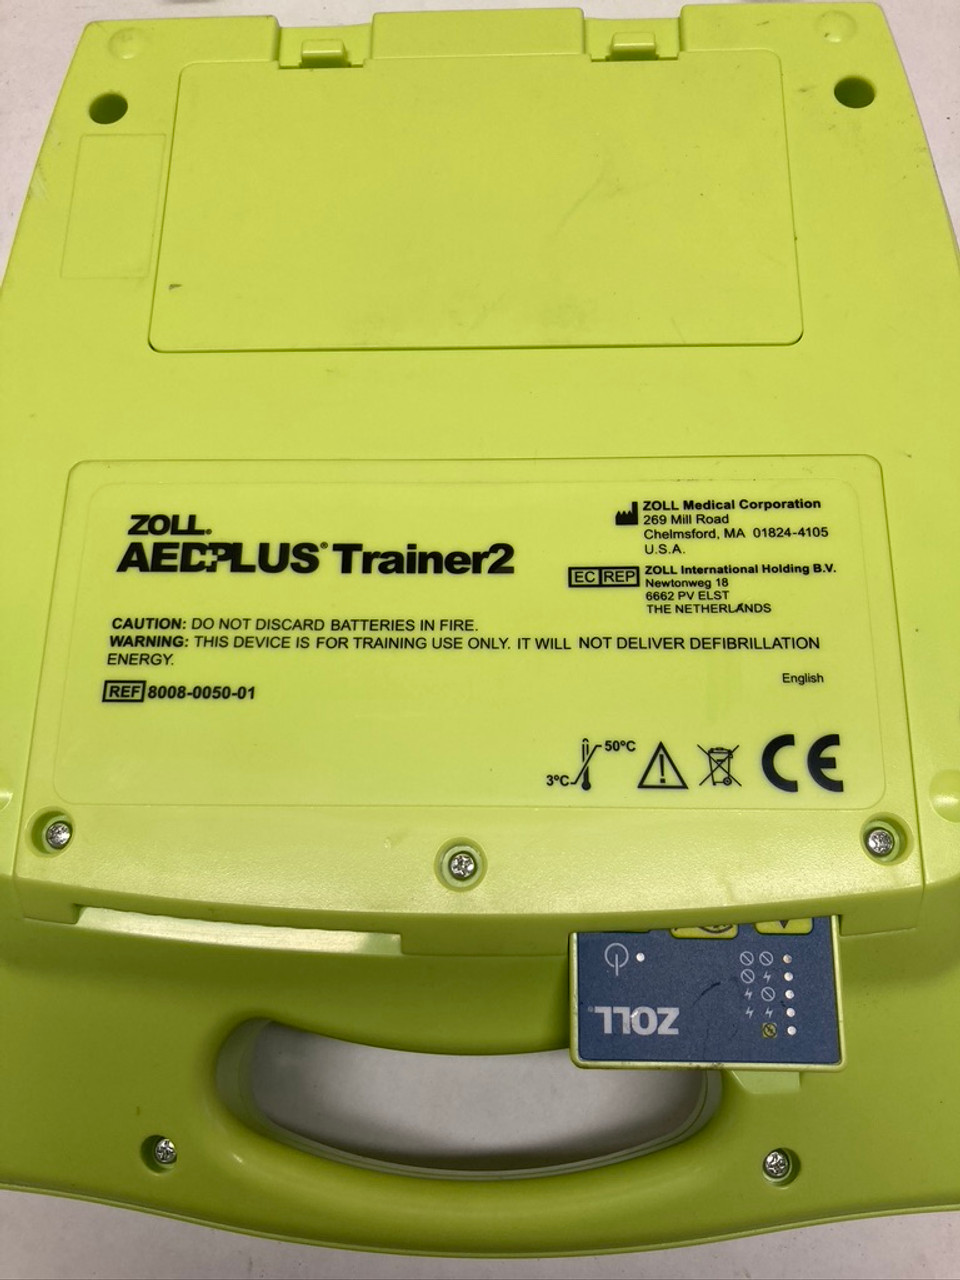 AED Plus Trainer 2 Defibrillator 8008-0050-01 Zoll Medical